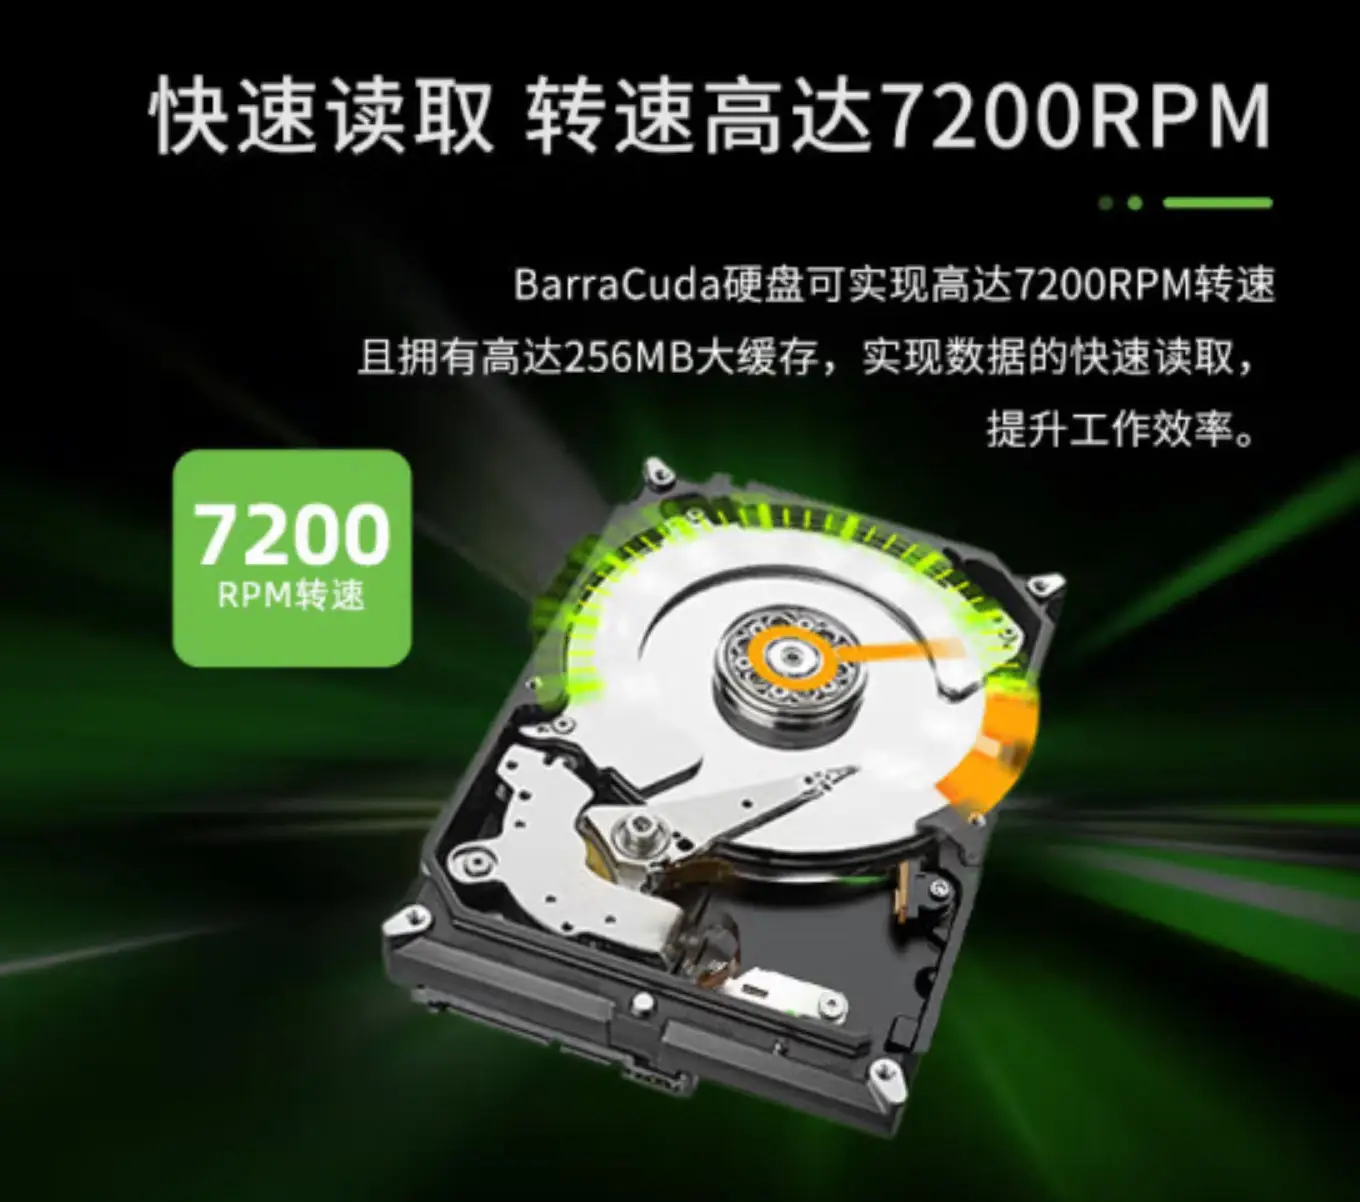 DDR51G 显卡：性能强劲但价格较高，选购需结合个人需求  第10张